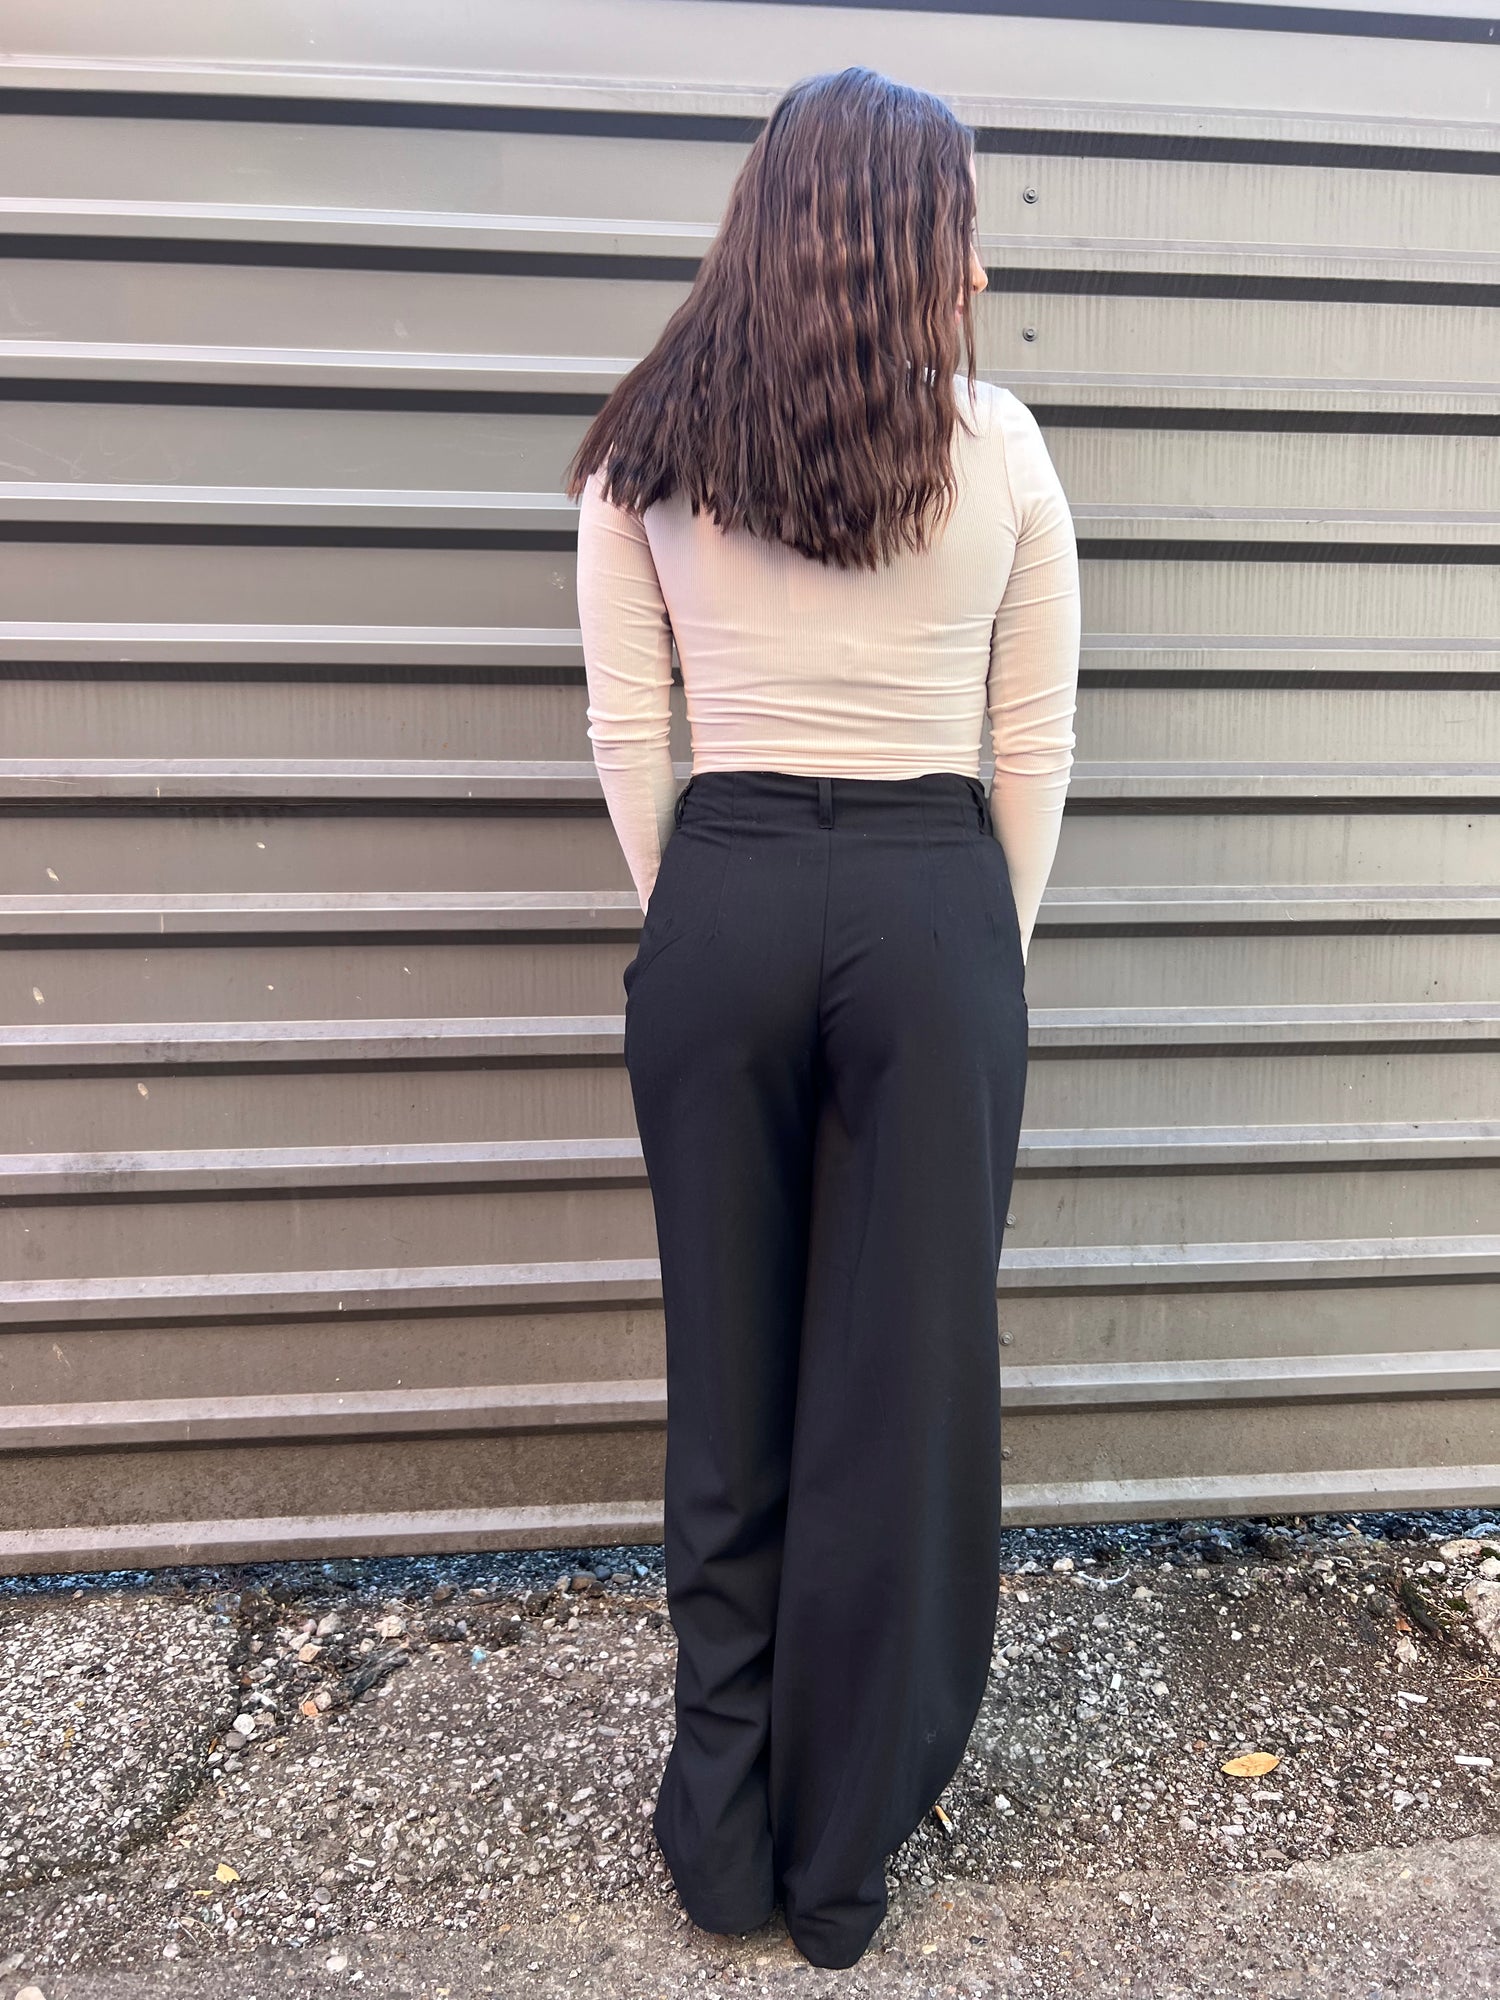 WOMEN'S BLACK DRESSY PANTS - THE HIP EAGLE BOUTIQUE